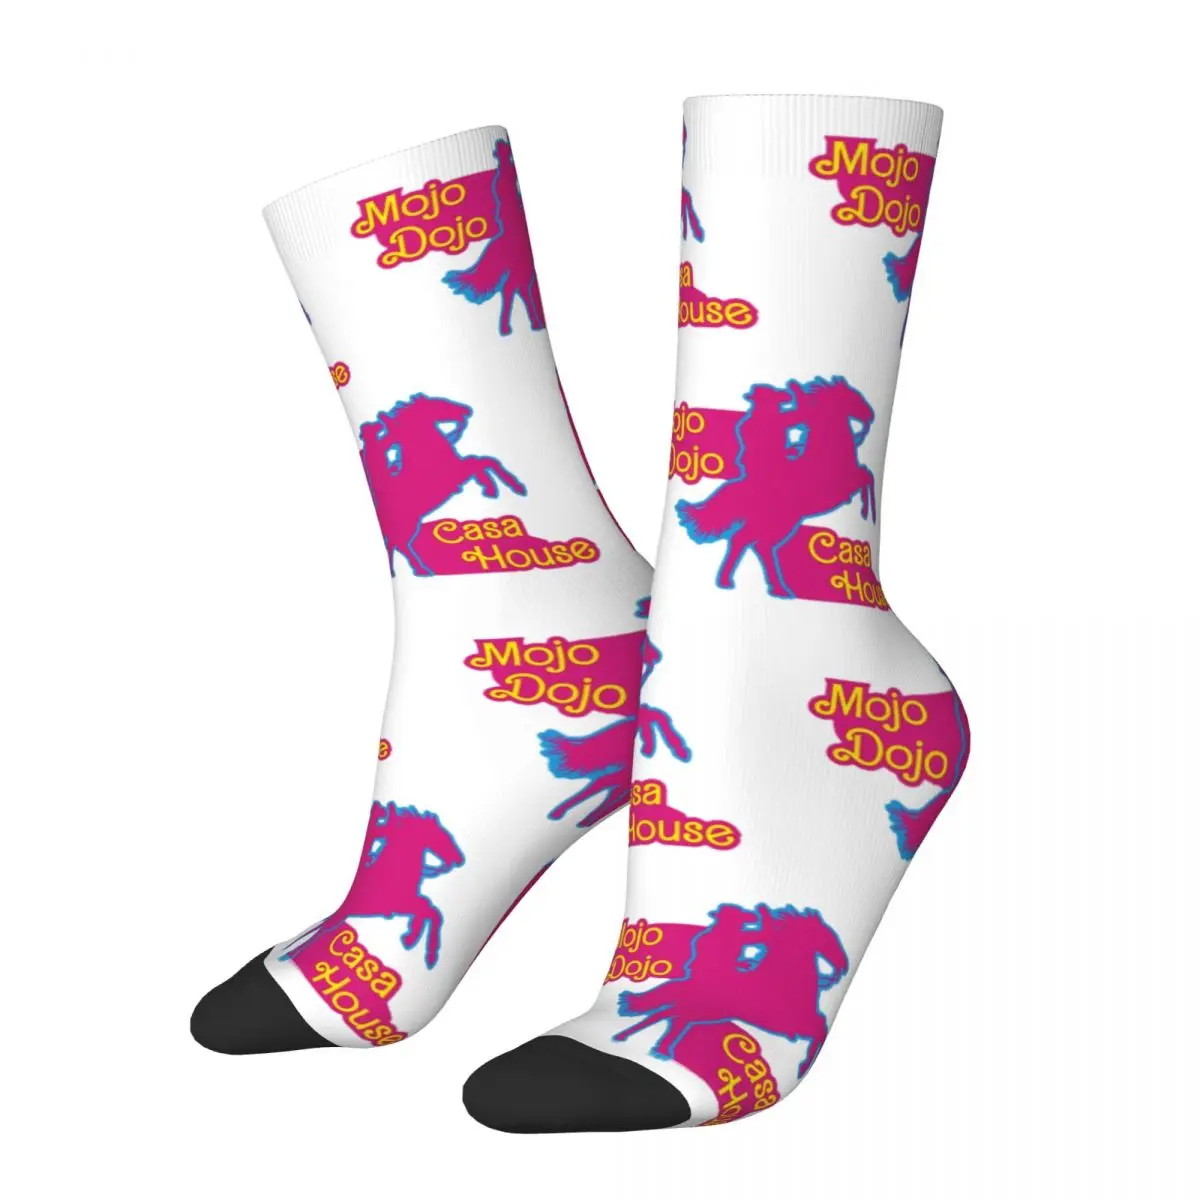 

Мужские носки Mojo Dojo Casa, мягкие модные носки, Райан Гослинг, новинка, товары, подарок на день рождения